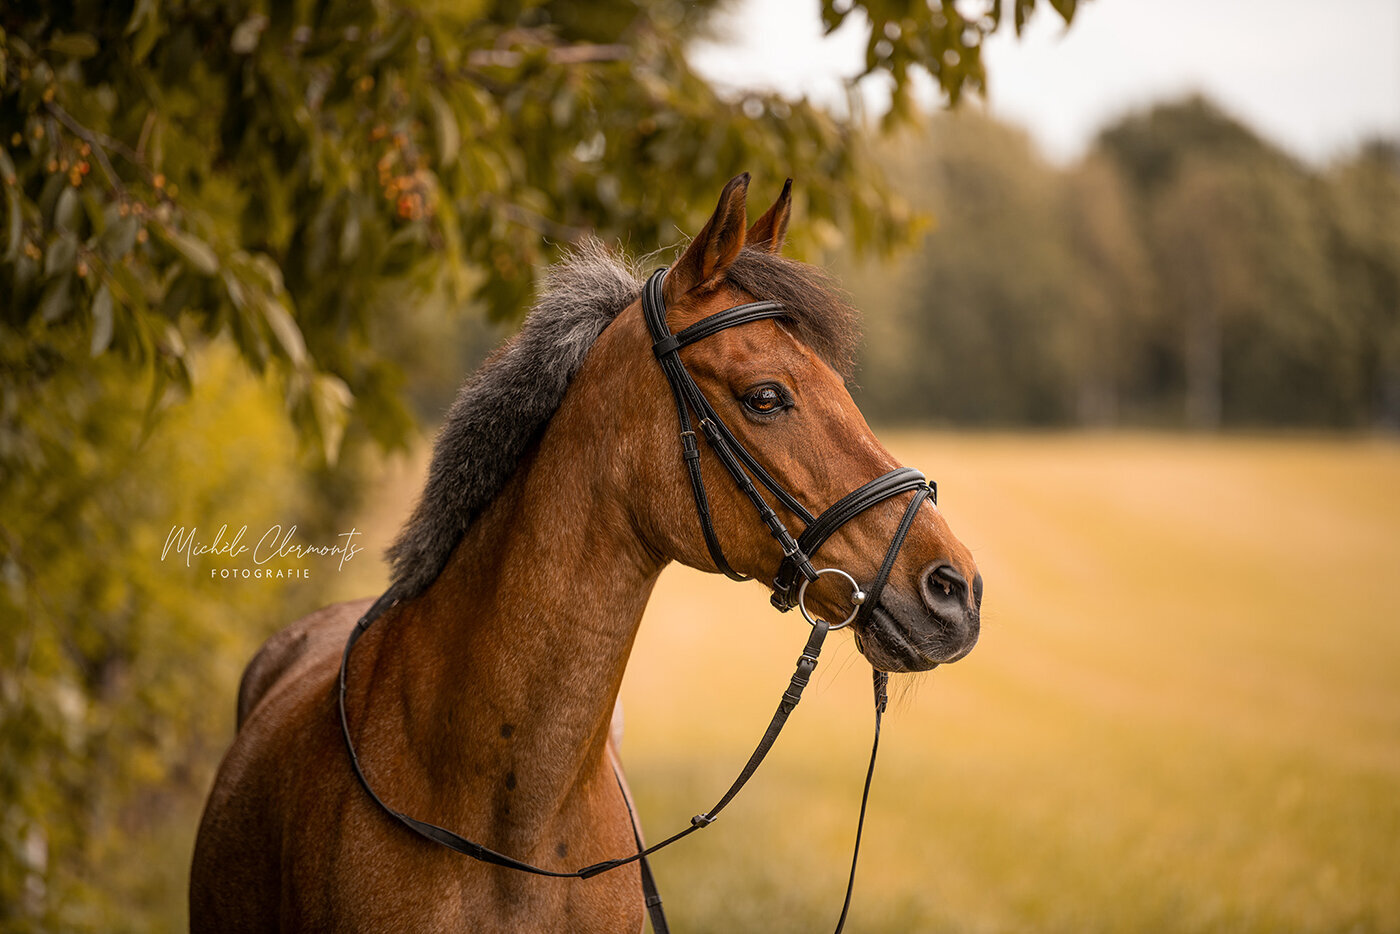 DSC_8794-paardenfotografie-michèle clermonts fotografie-low